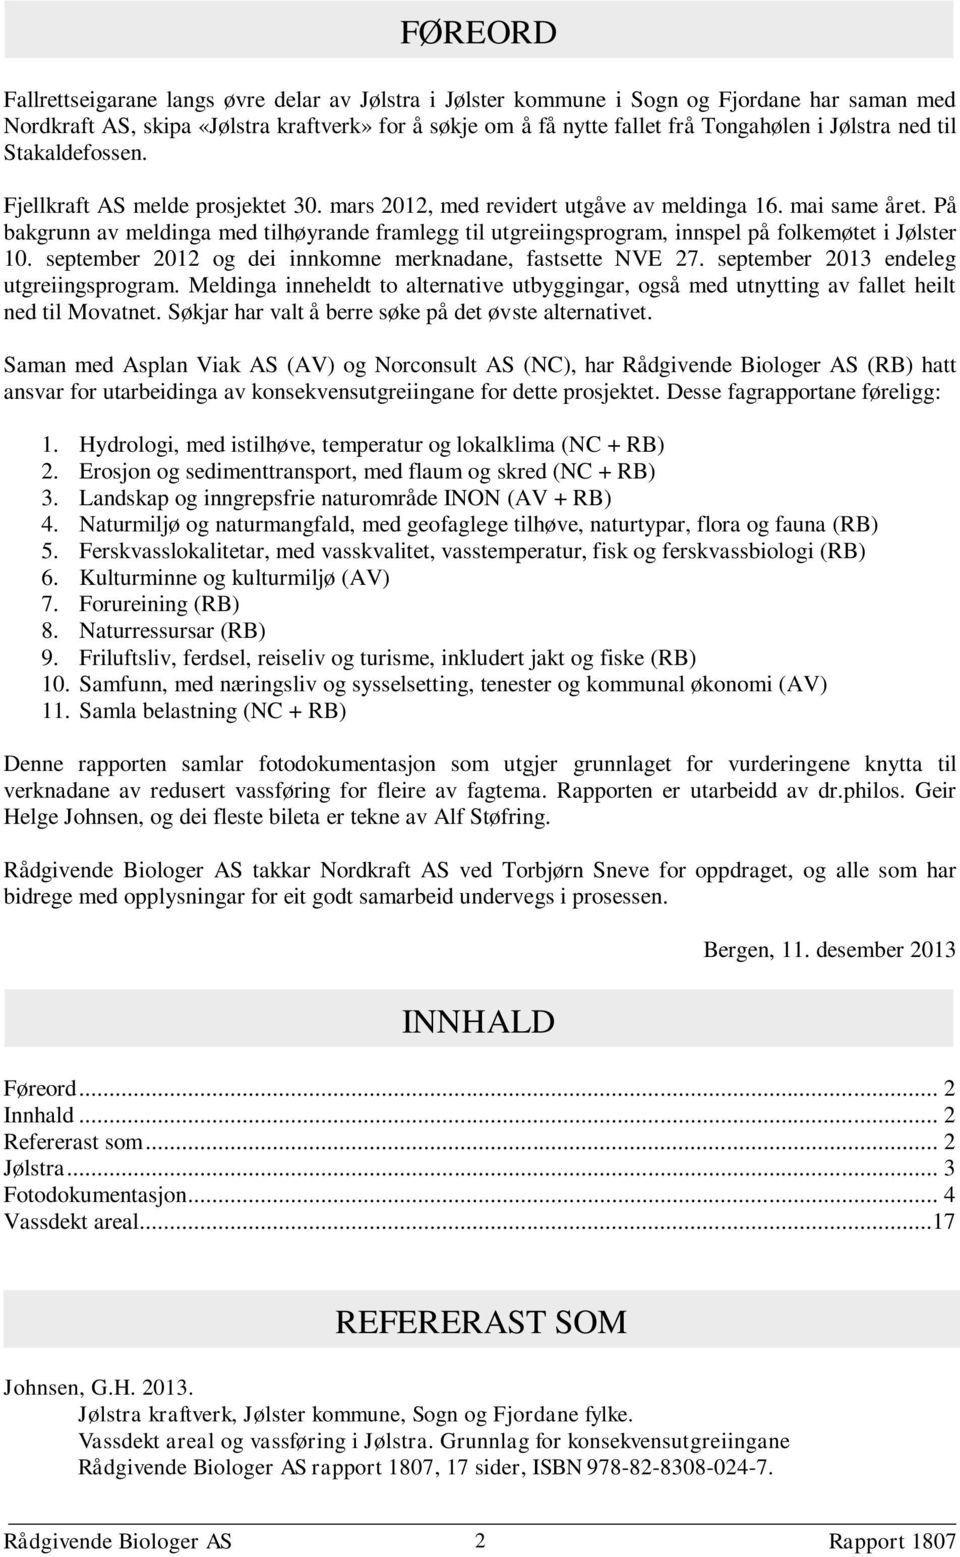 På bakgrunn av meldinga med tilhøyrande framlegg til utgreiingsprogram, innspel på folkemøtet i Jølster 10. september 2012 og dei innkomne merknadane, fastsette NVE 27.